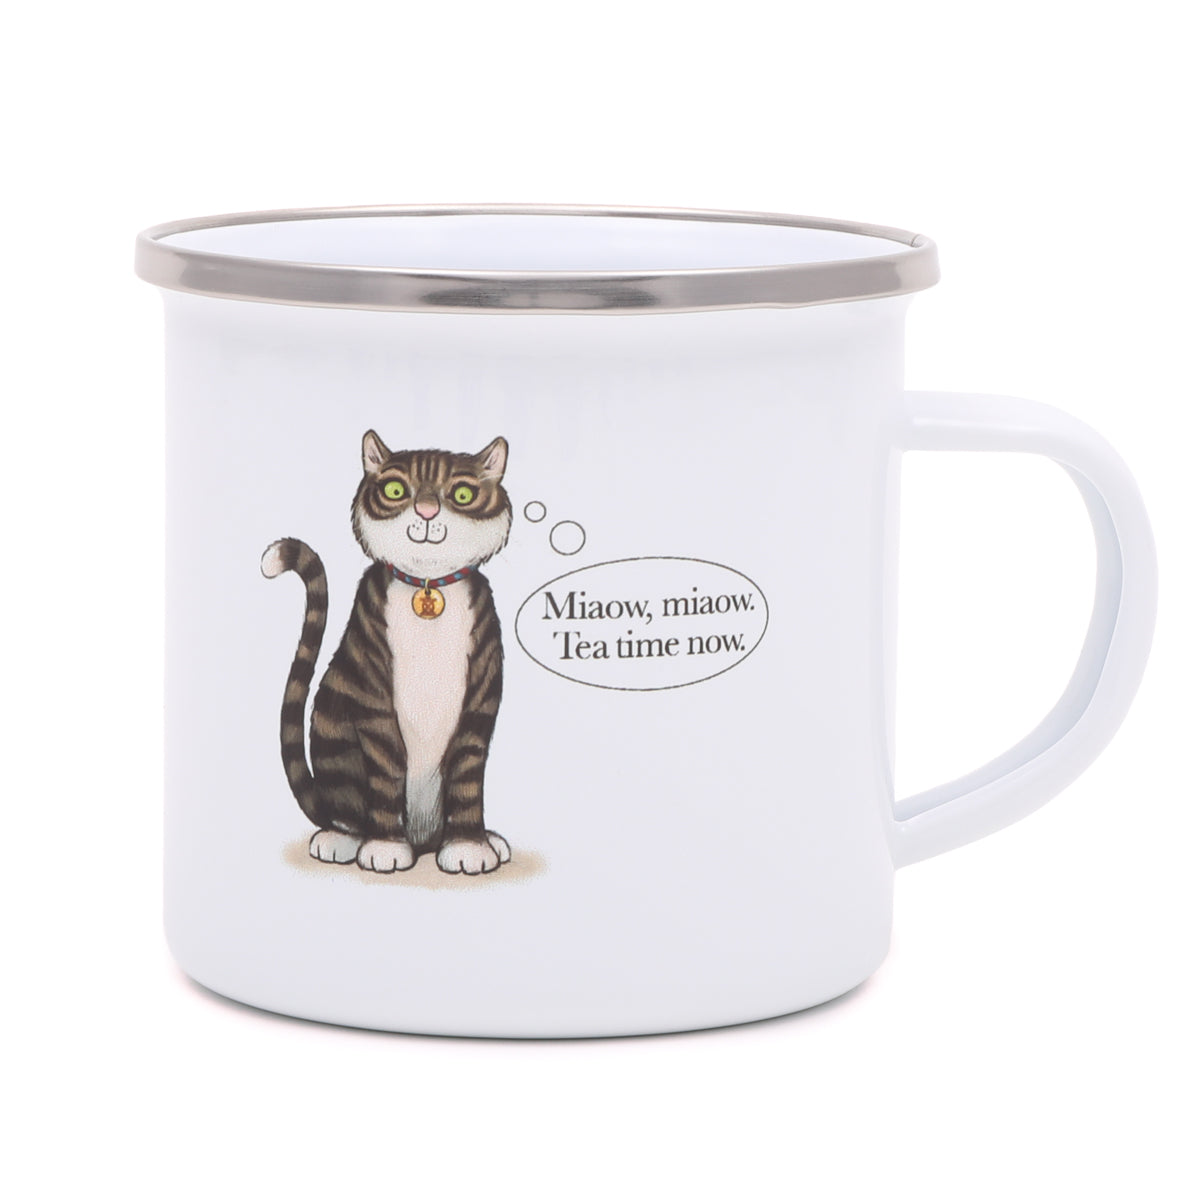 Tower Bridge Cat Enamel Mug 2